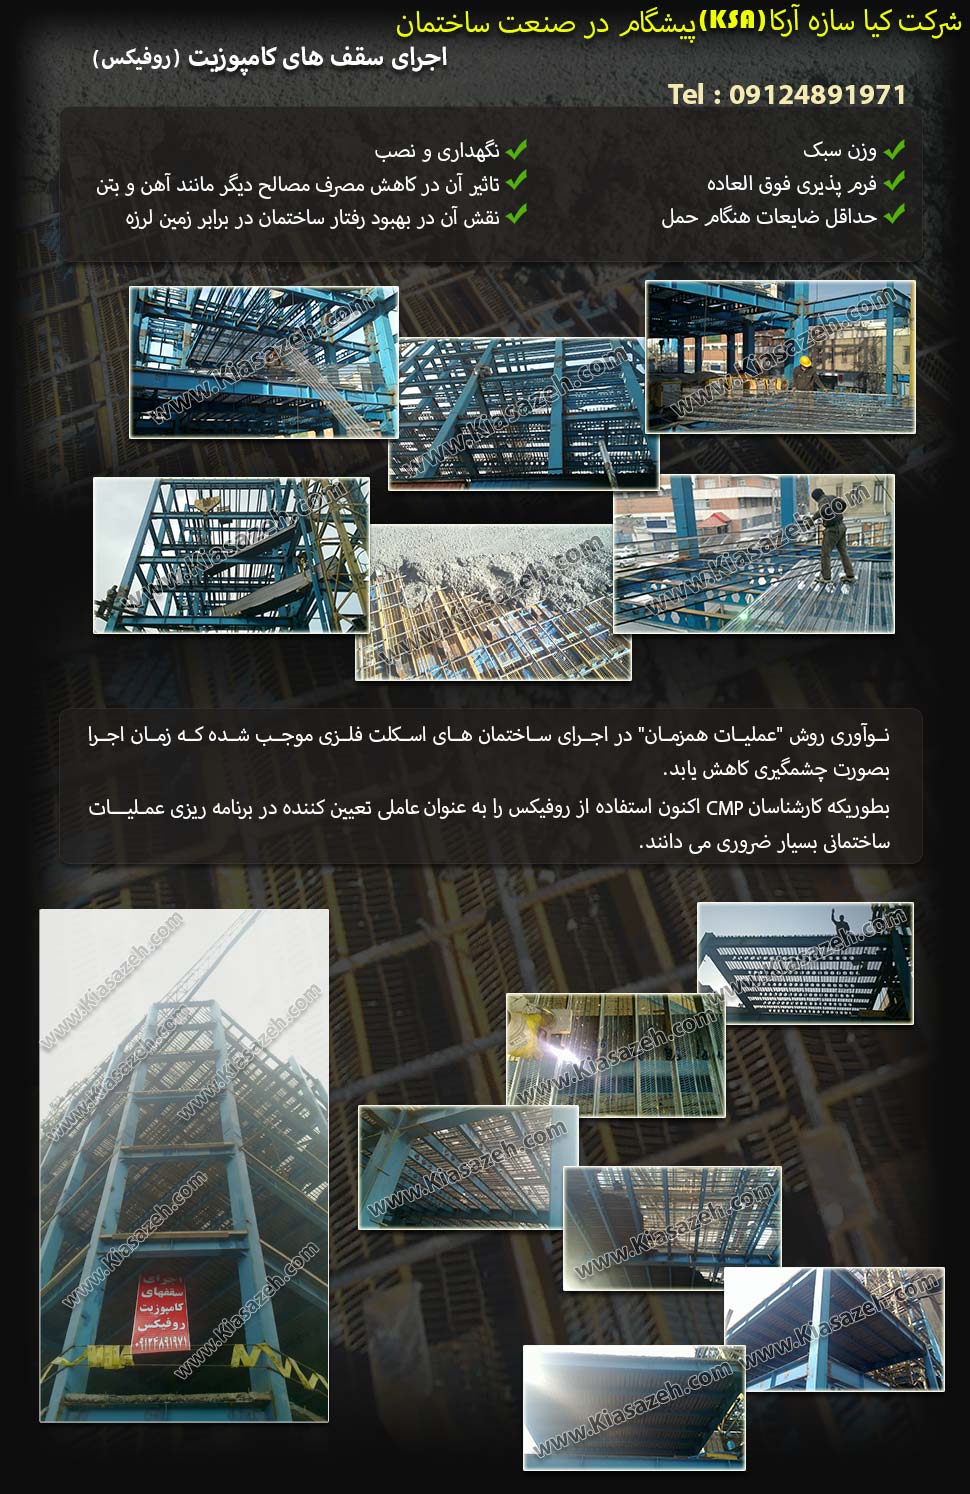 شرکت کیا سازه آرکا (KSA) پیشگام در صنعت ساختمان، اجرای سقف های کامپوزیت روفیکس